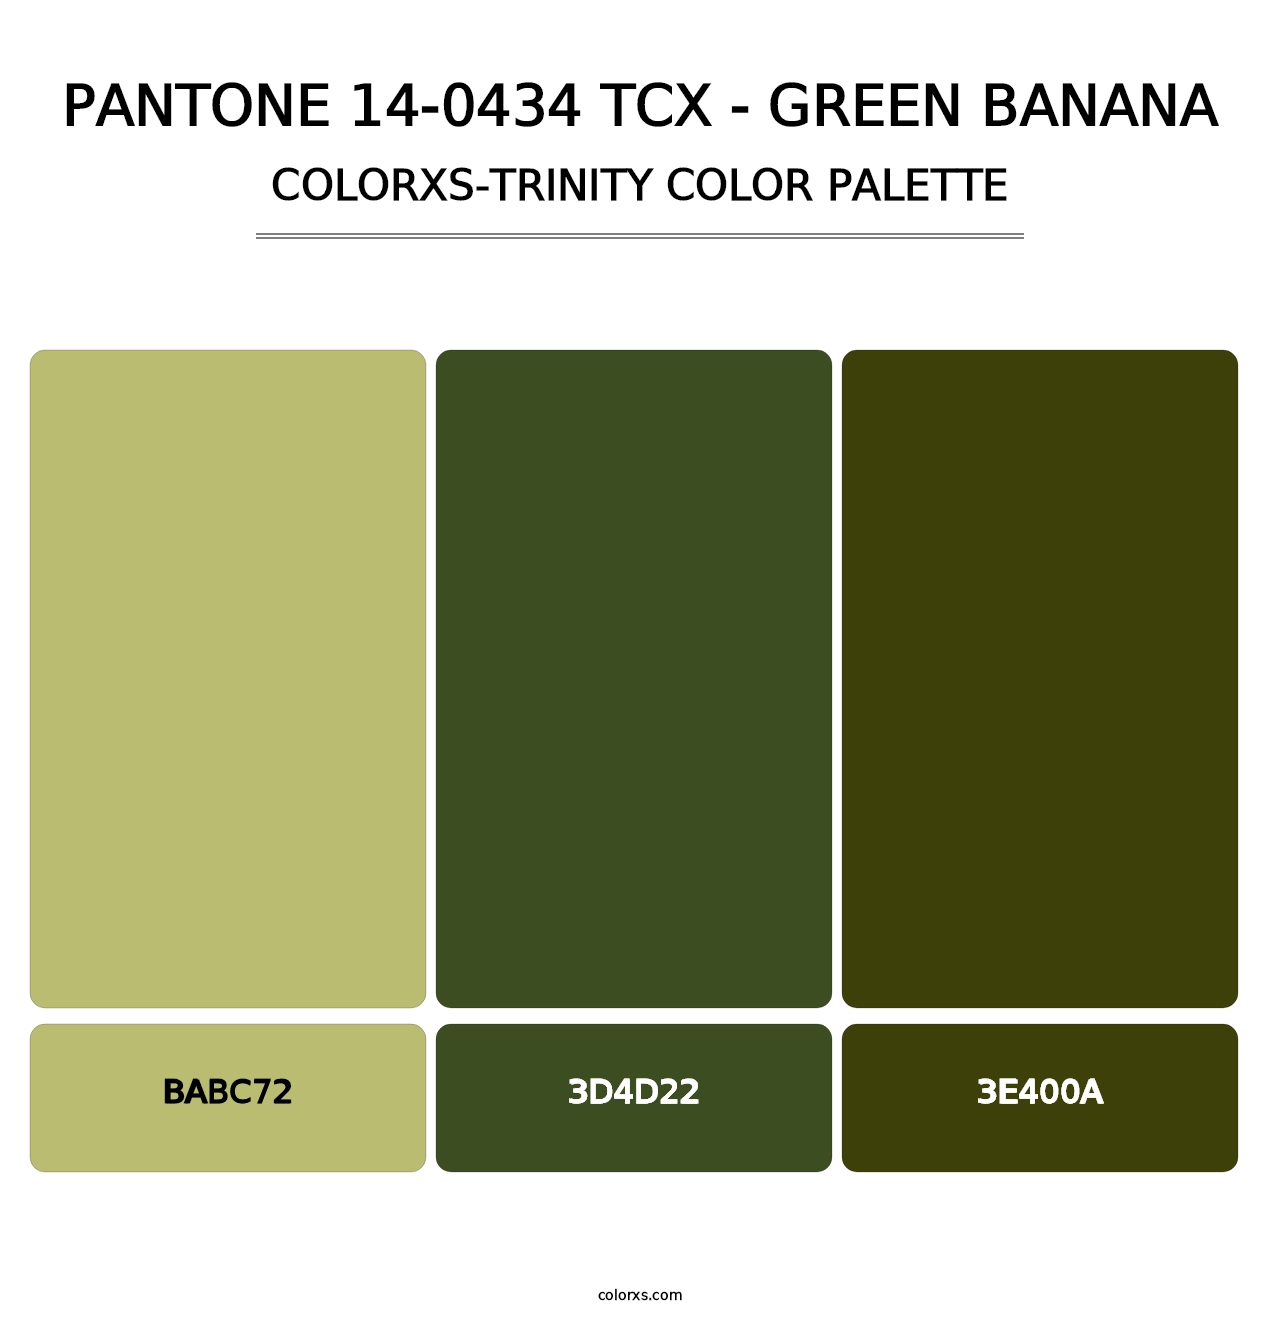 PANTONE 14-0434 TCX - Green Banana - Colorxs Trinity Palette